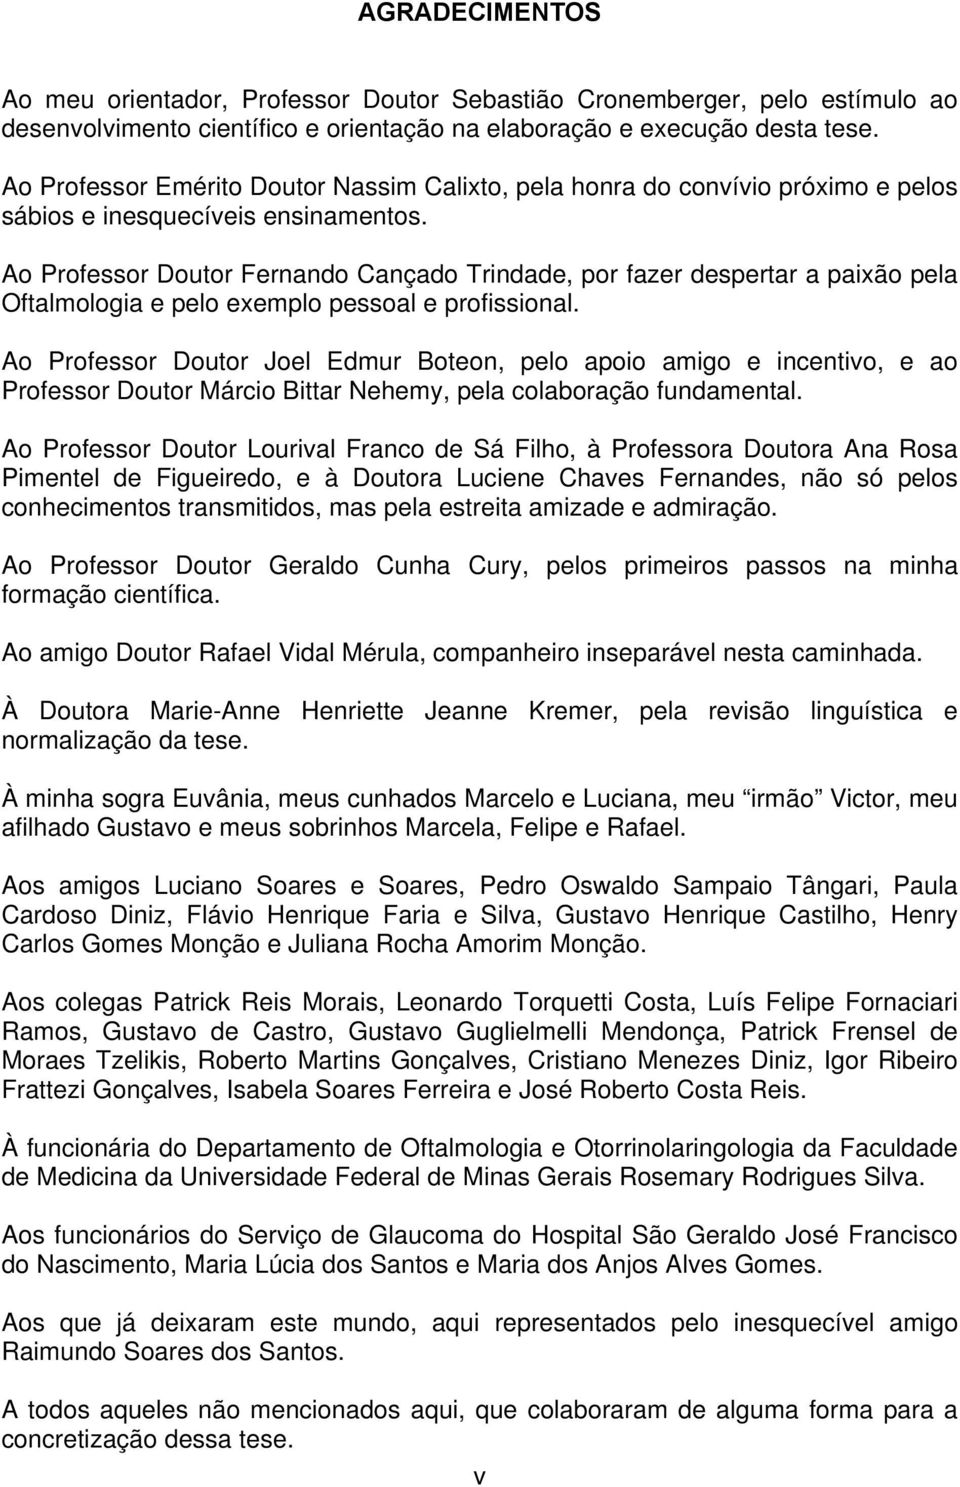 Ao Professor Doutor Fernando Cançado Trindade, por fazer despertar a paixão pela Oftalmologia e pelo exemplo pessoal e profissional.